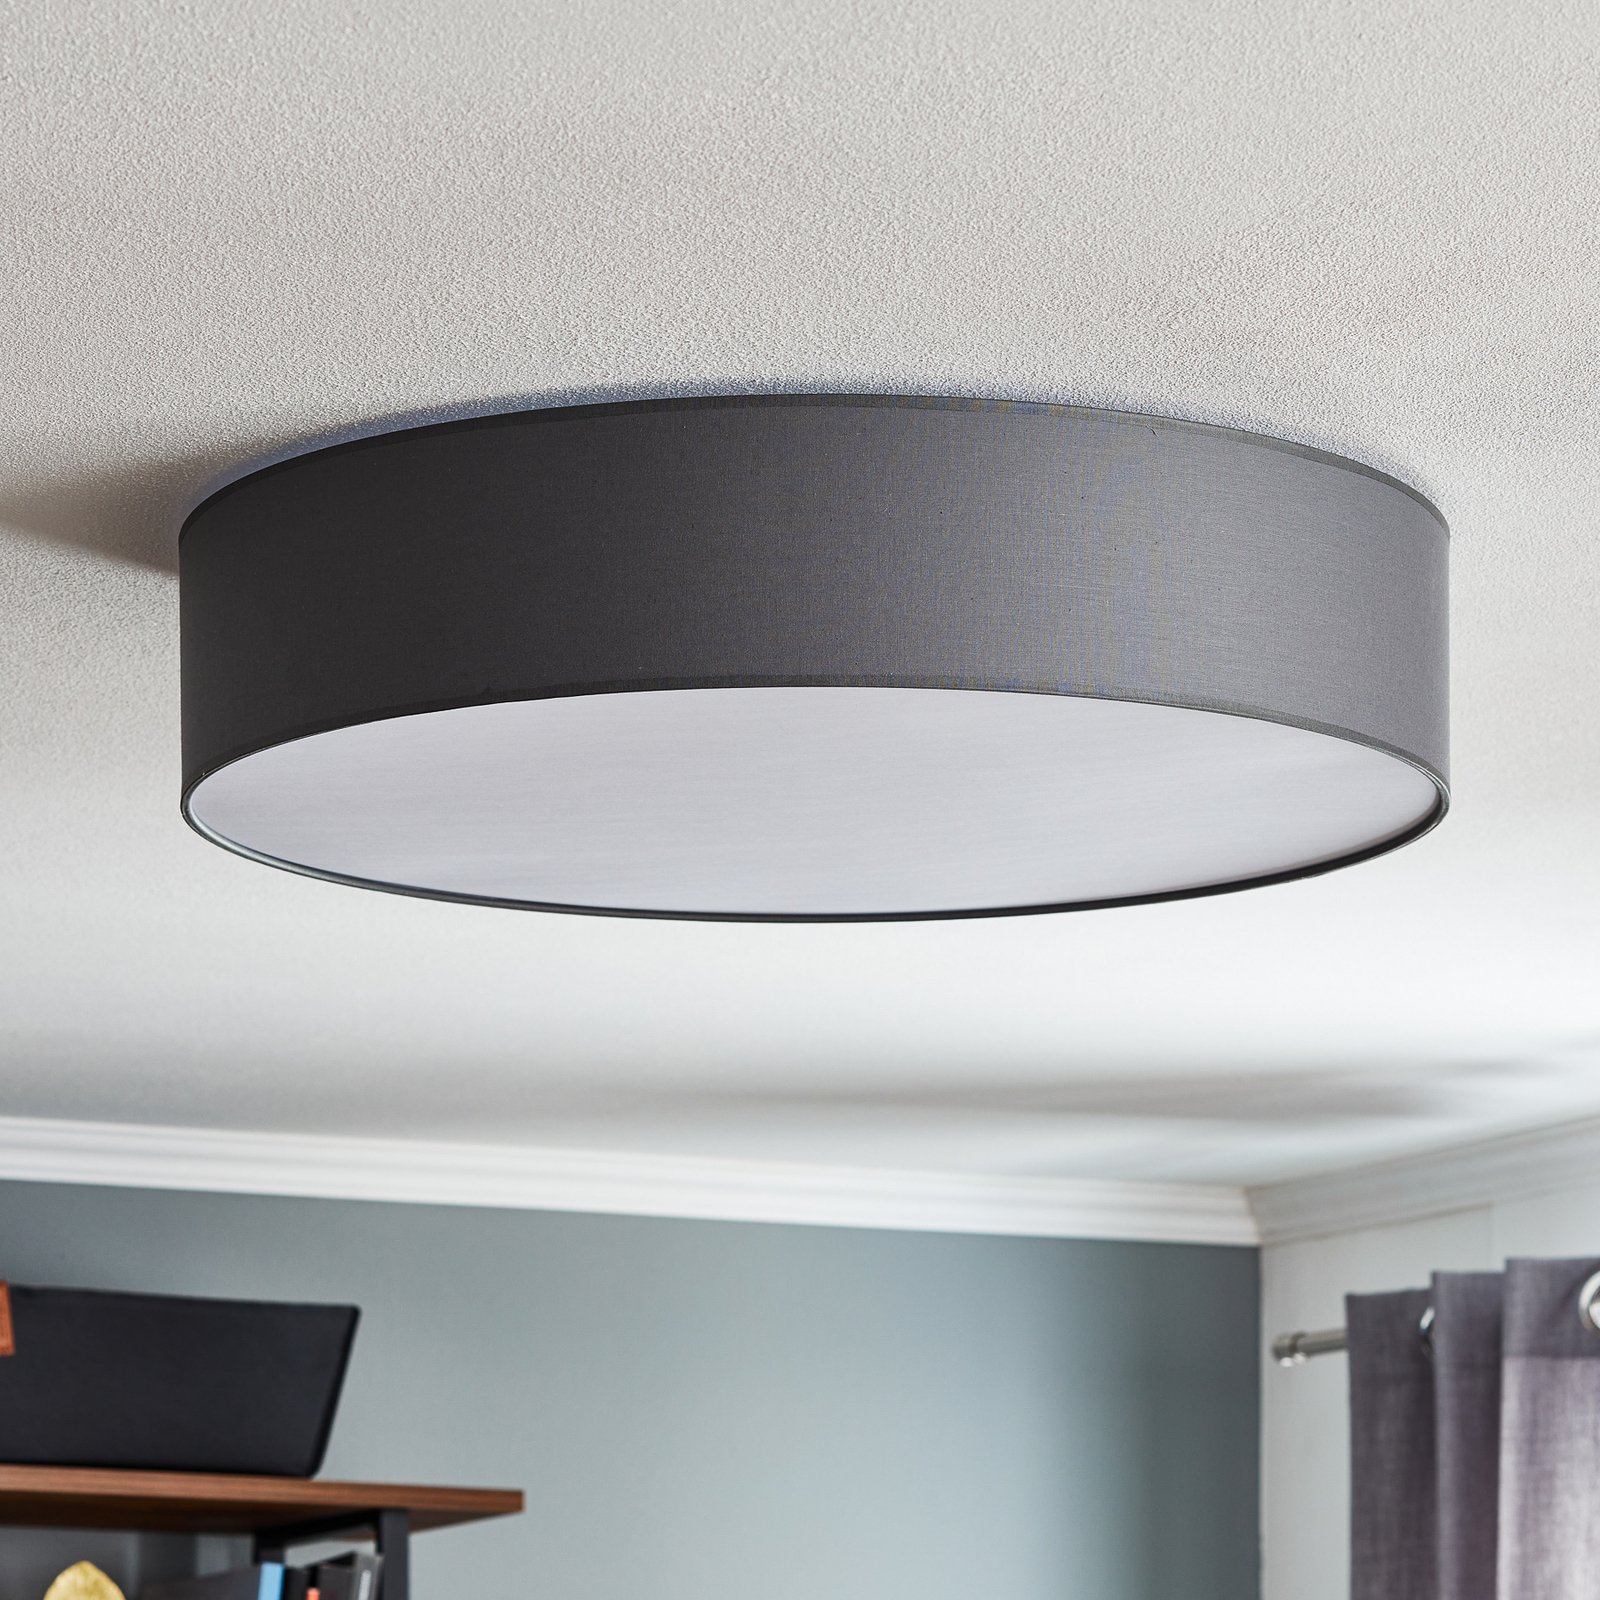 Rondo ceiling light, grey Ø 60cm